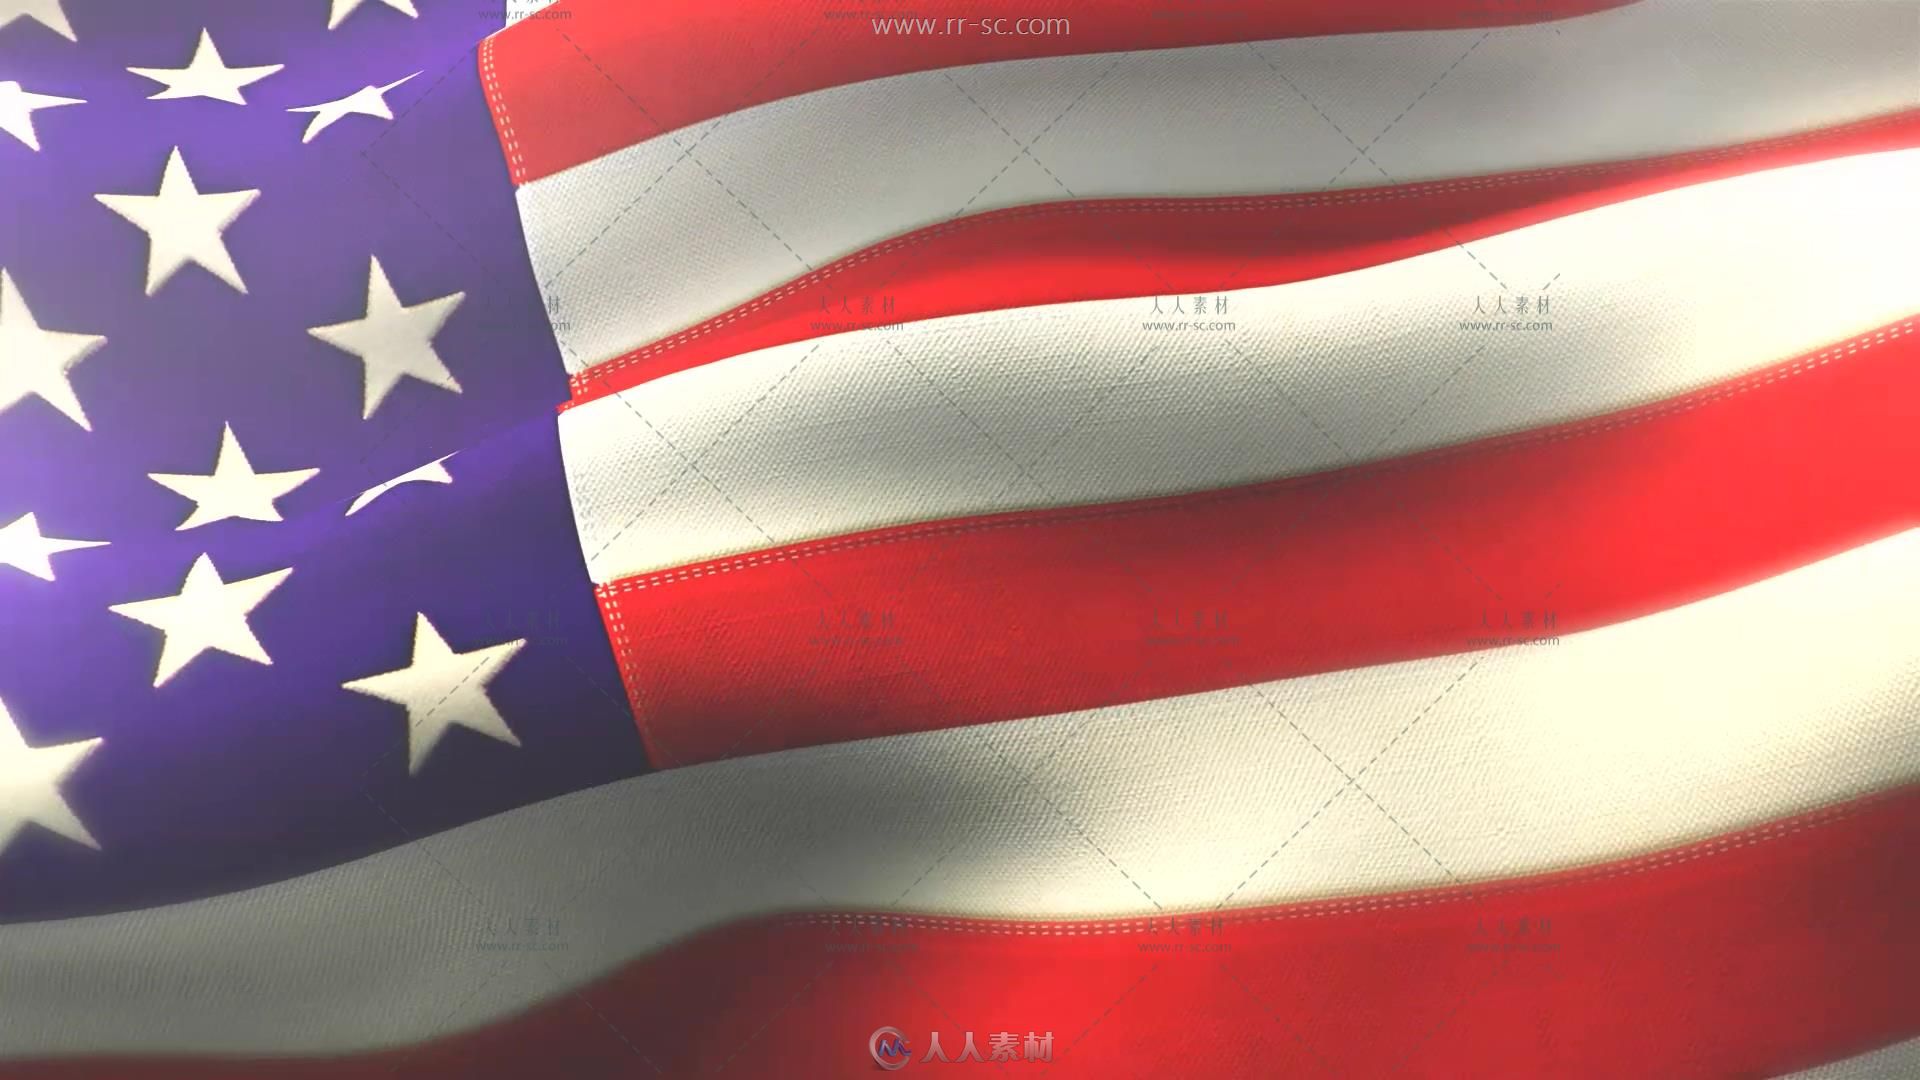 美国国旗节日烟花气球舞台背景视频素材99 / 作者:xbj / 帖子ID:16741522,4426283